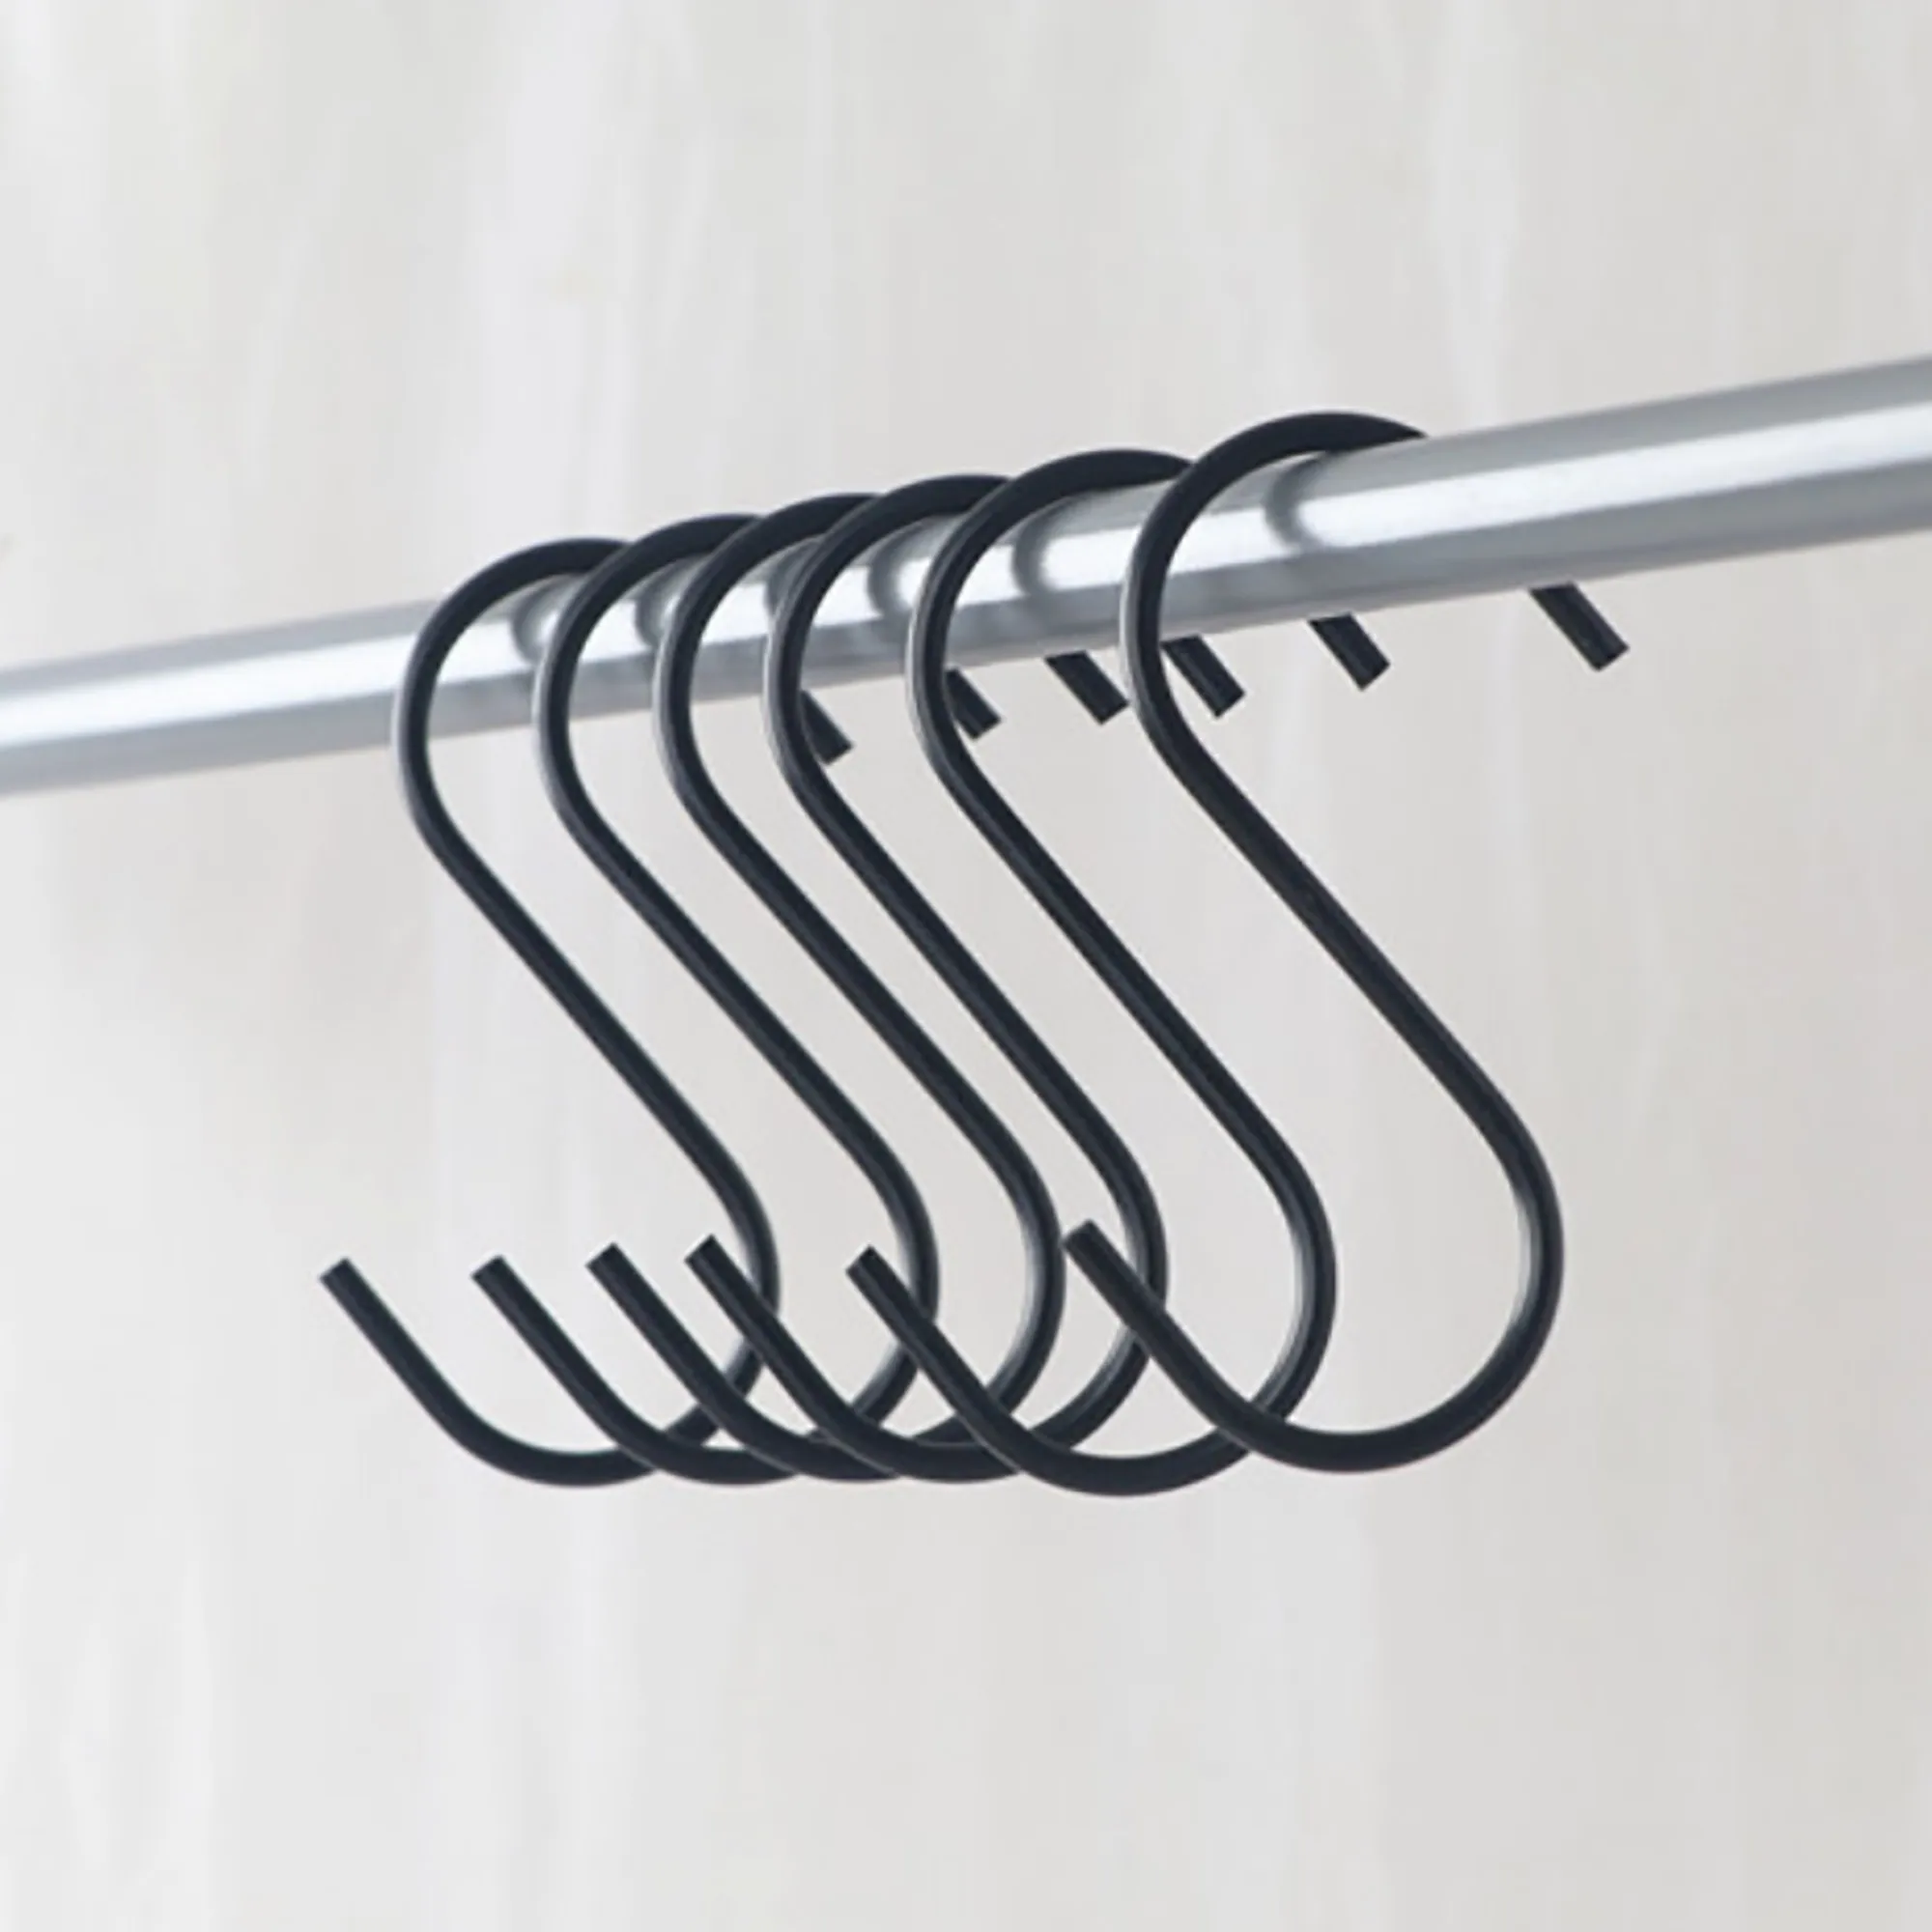 https://ae01.alicdn.com/kf/He36523a7a2da43c0bf3e3006be91d6f4C/12pcs-6pc-wall-hangers-Frame-hanger-3-2inch-Black-stainless-S-hook-kitchen-hooks-for-utensils.jpg